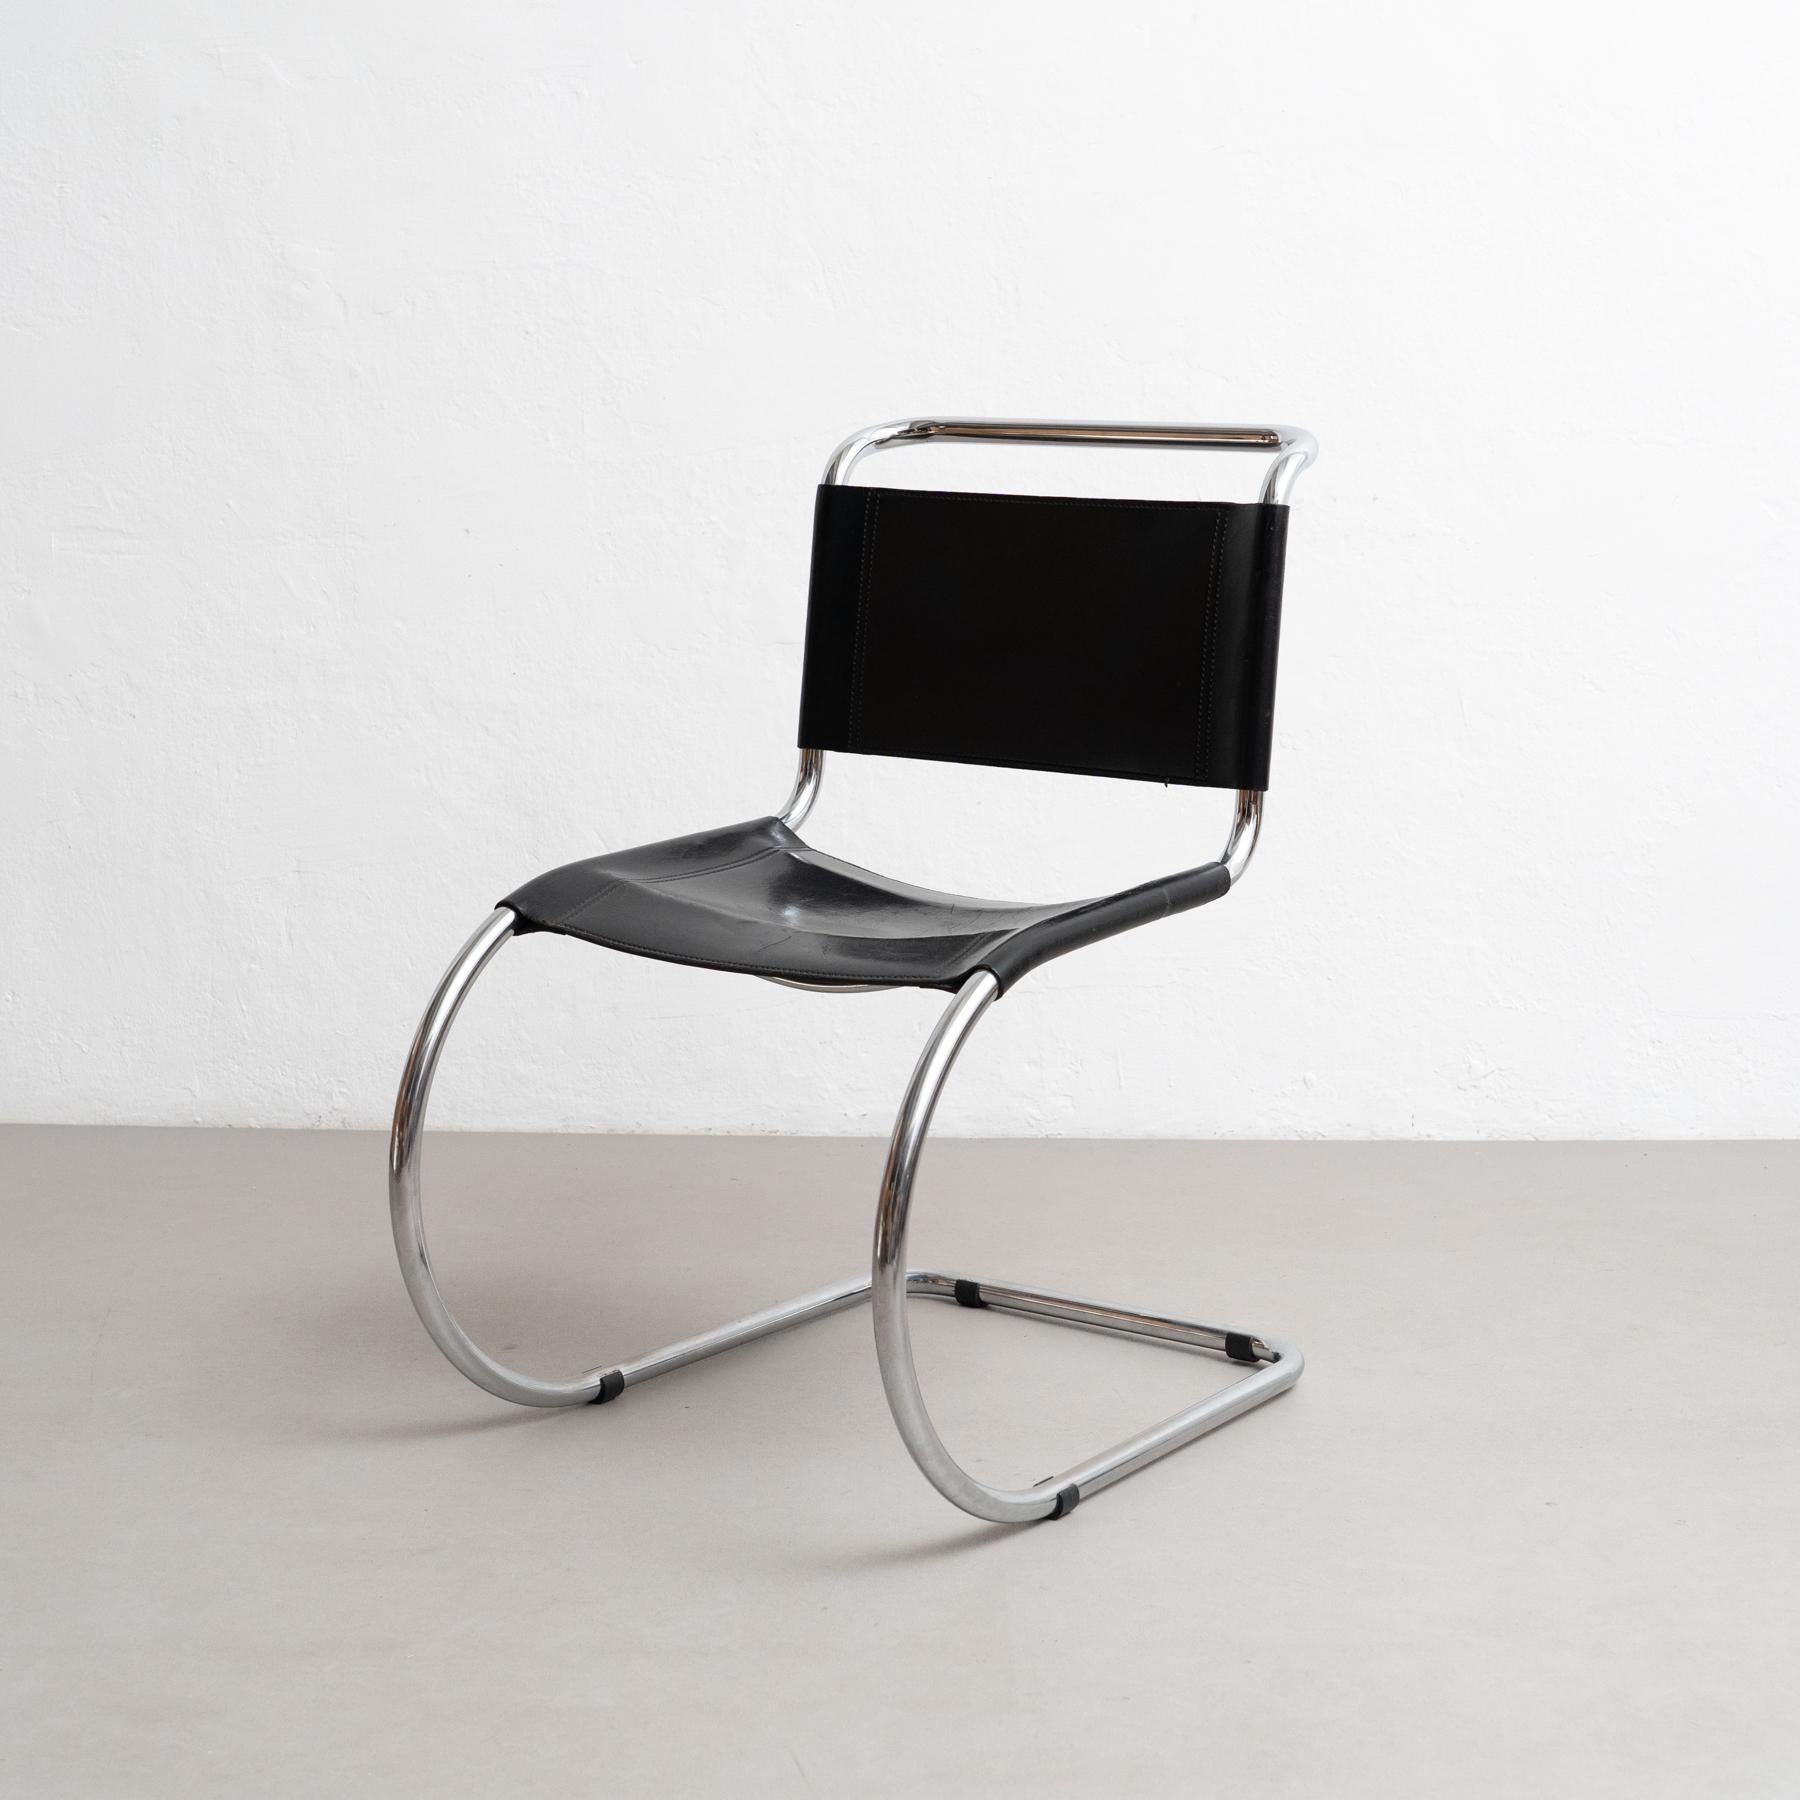 Embrassez la simplicité raffinée de l'architecture moderne avec cette superbe chaise CIRCA, conçue par le célèbre Ludwig Mies van der Rohe vers 1930 et fabriquée par un fabricant inconnu en Allemagne vers 1960. Inspiré par les chaises de Marcel